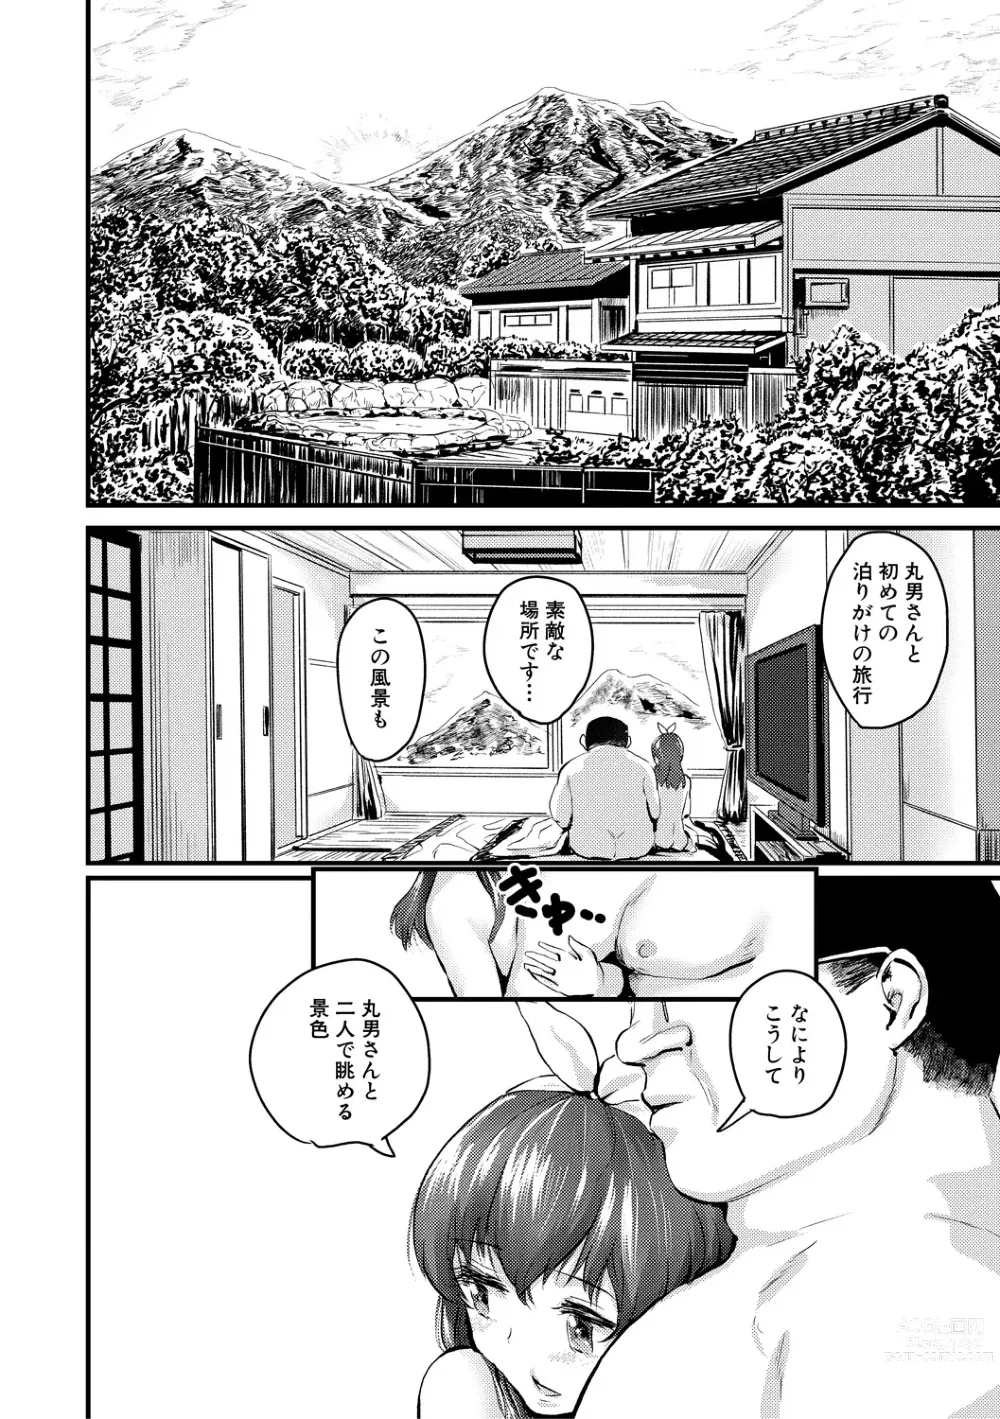 Page 18 of manga Mesu Kobi koubi Osu Bou-sama-tachi ni Kansha no Koshi Furi